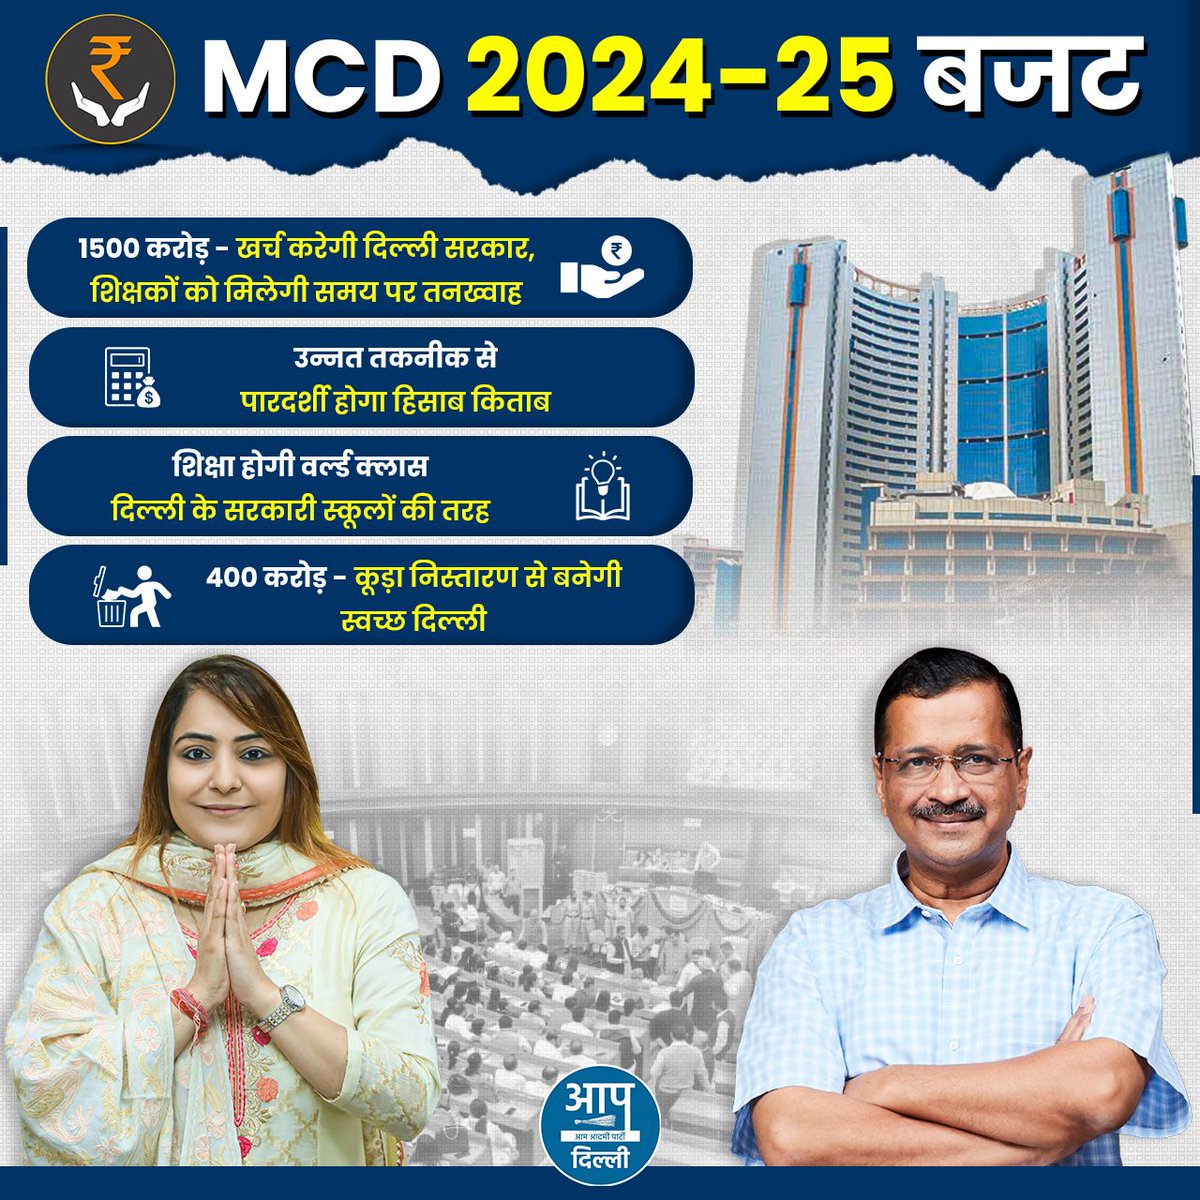 दिल्ली के लोगों ने हमें MCD में भी काम करने की ज़िम्मेदारी दी थी, उसे पूरी ईमानदारी से निभाते हुए हम दिन-रात मेहनत से काम कर रहे हैं। हमें मिलकर दिल्ली को एक साफ़-स्वच्छ और सुंदर शहर बनाना है।
:अरविंद केजरीवाल मुख्यमंत्री 

#AAPkaMCDBudget